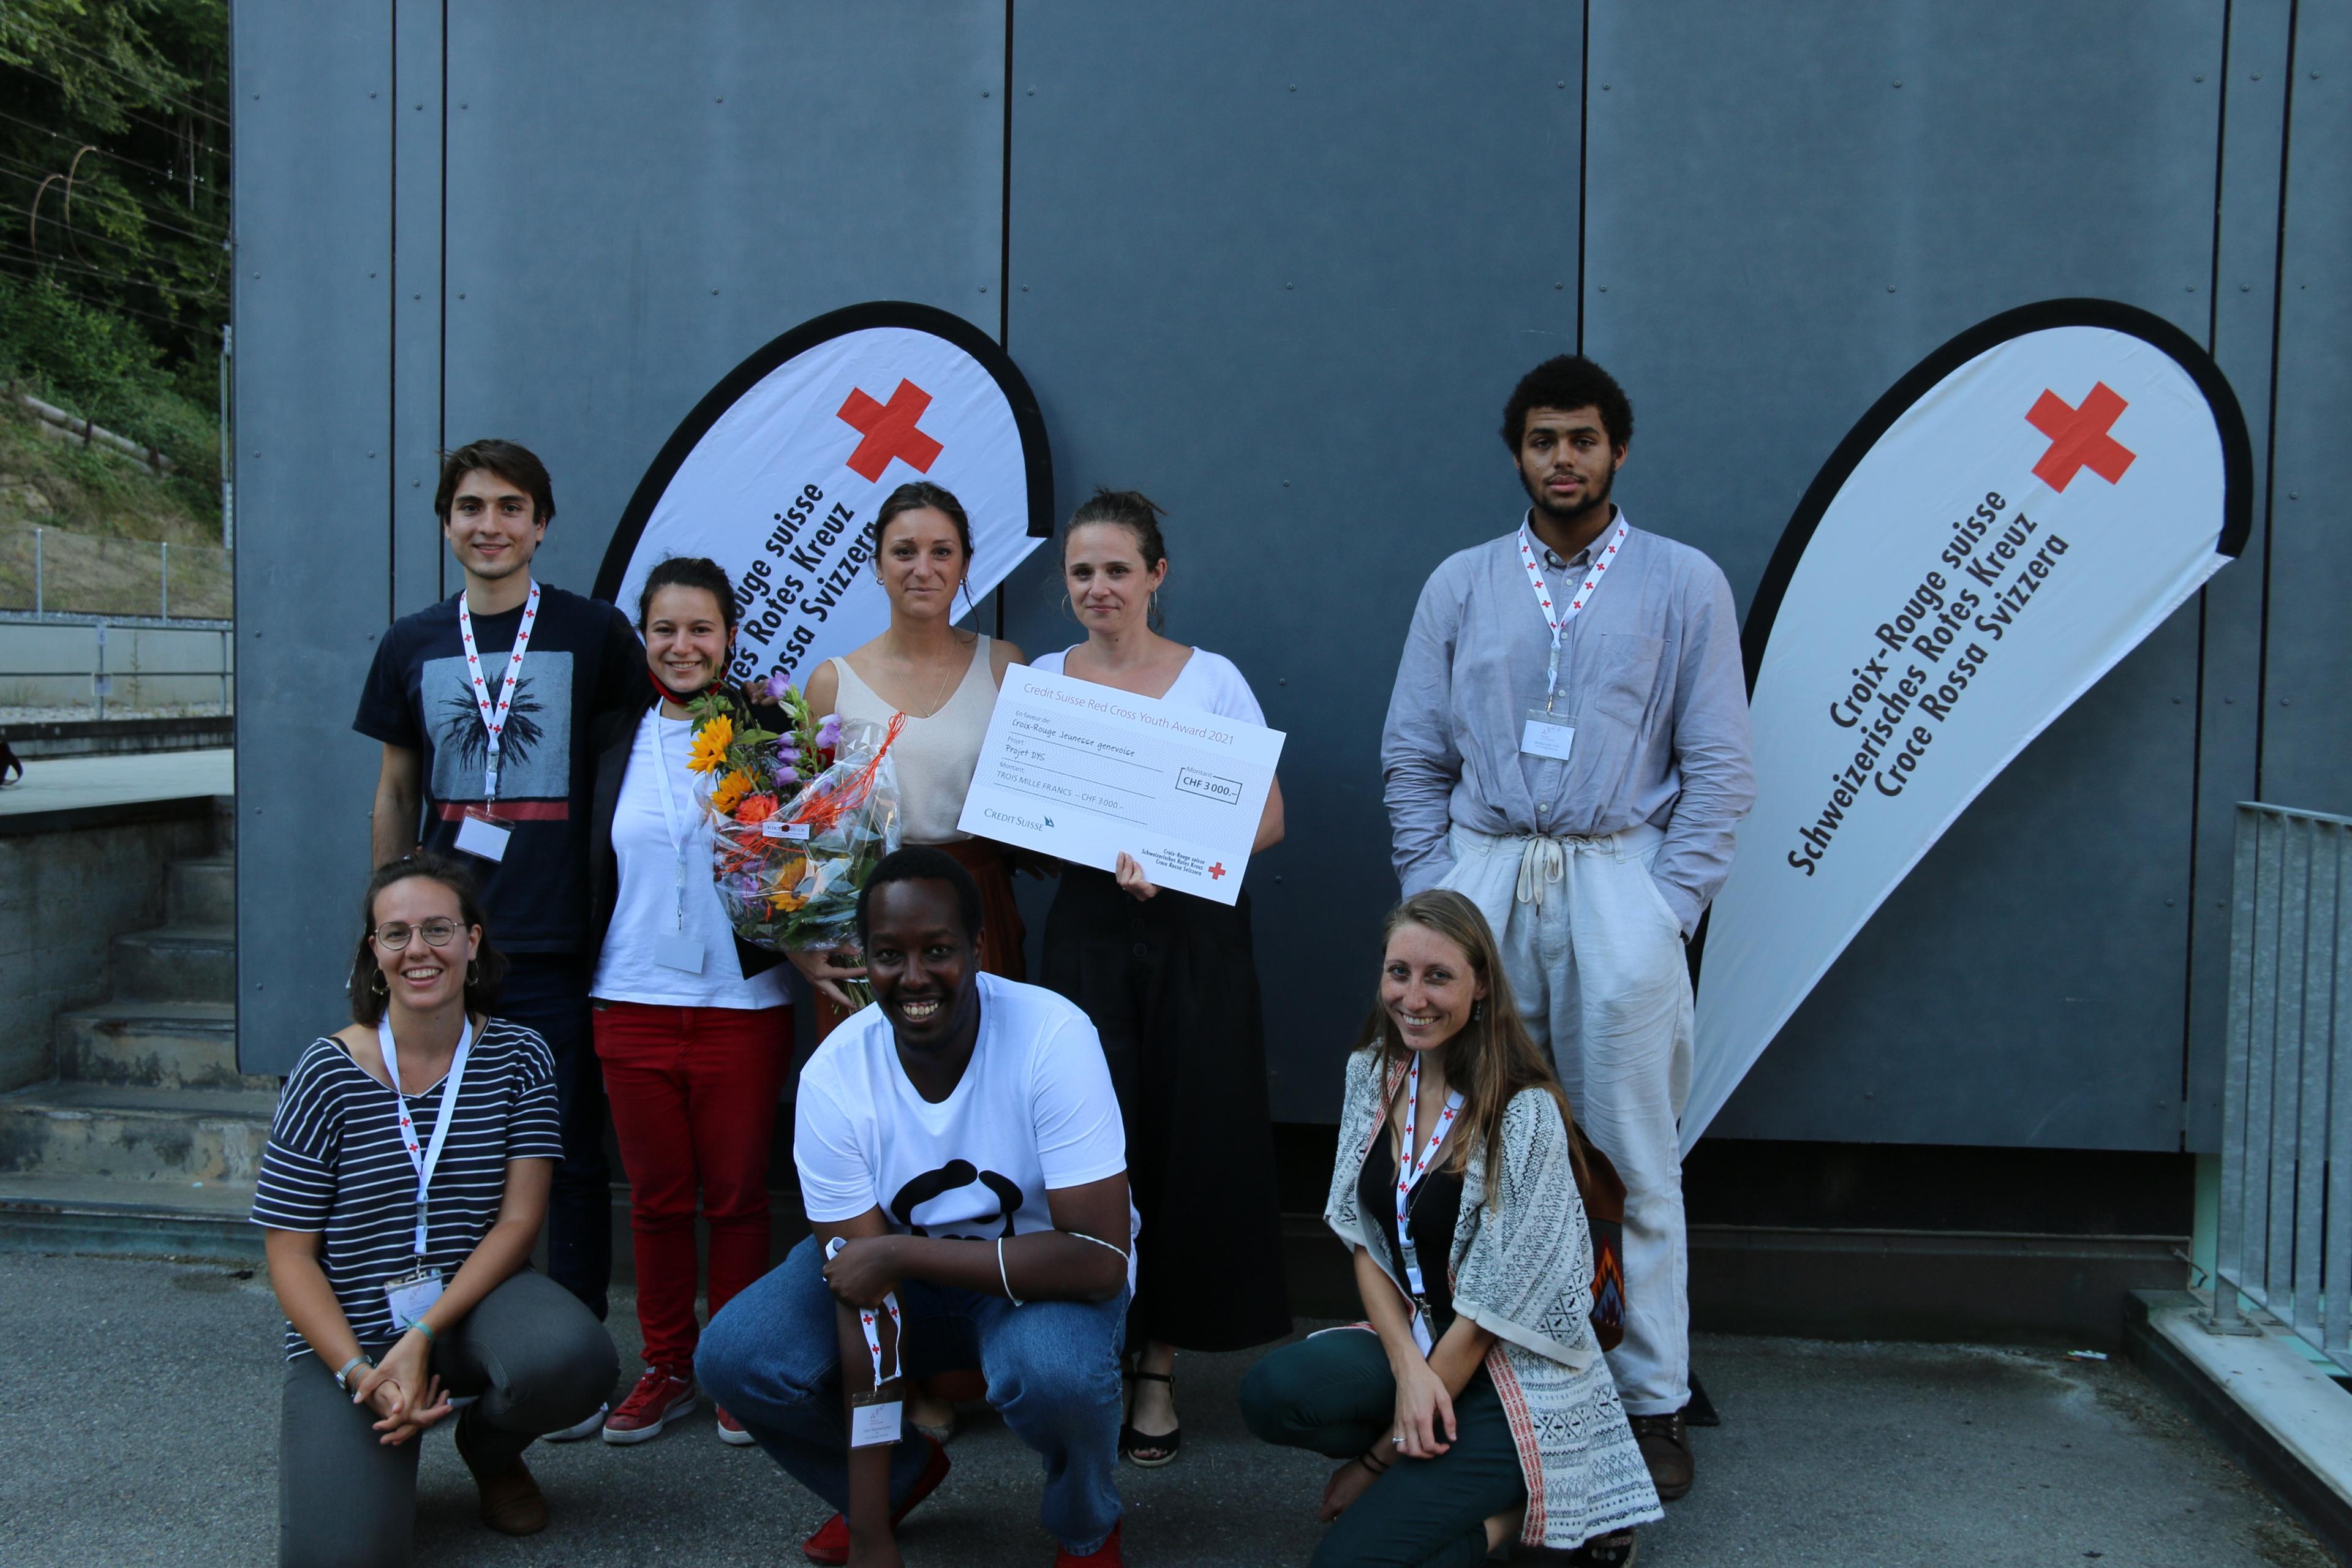 Mitglieder des Jugendrotkreuz Kanton Genf zeigen den Scheck, den sie als Gewinner des Credit Suisse Red Cross Youth Award 2021 erhalten haben.